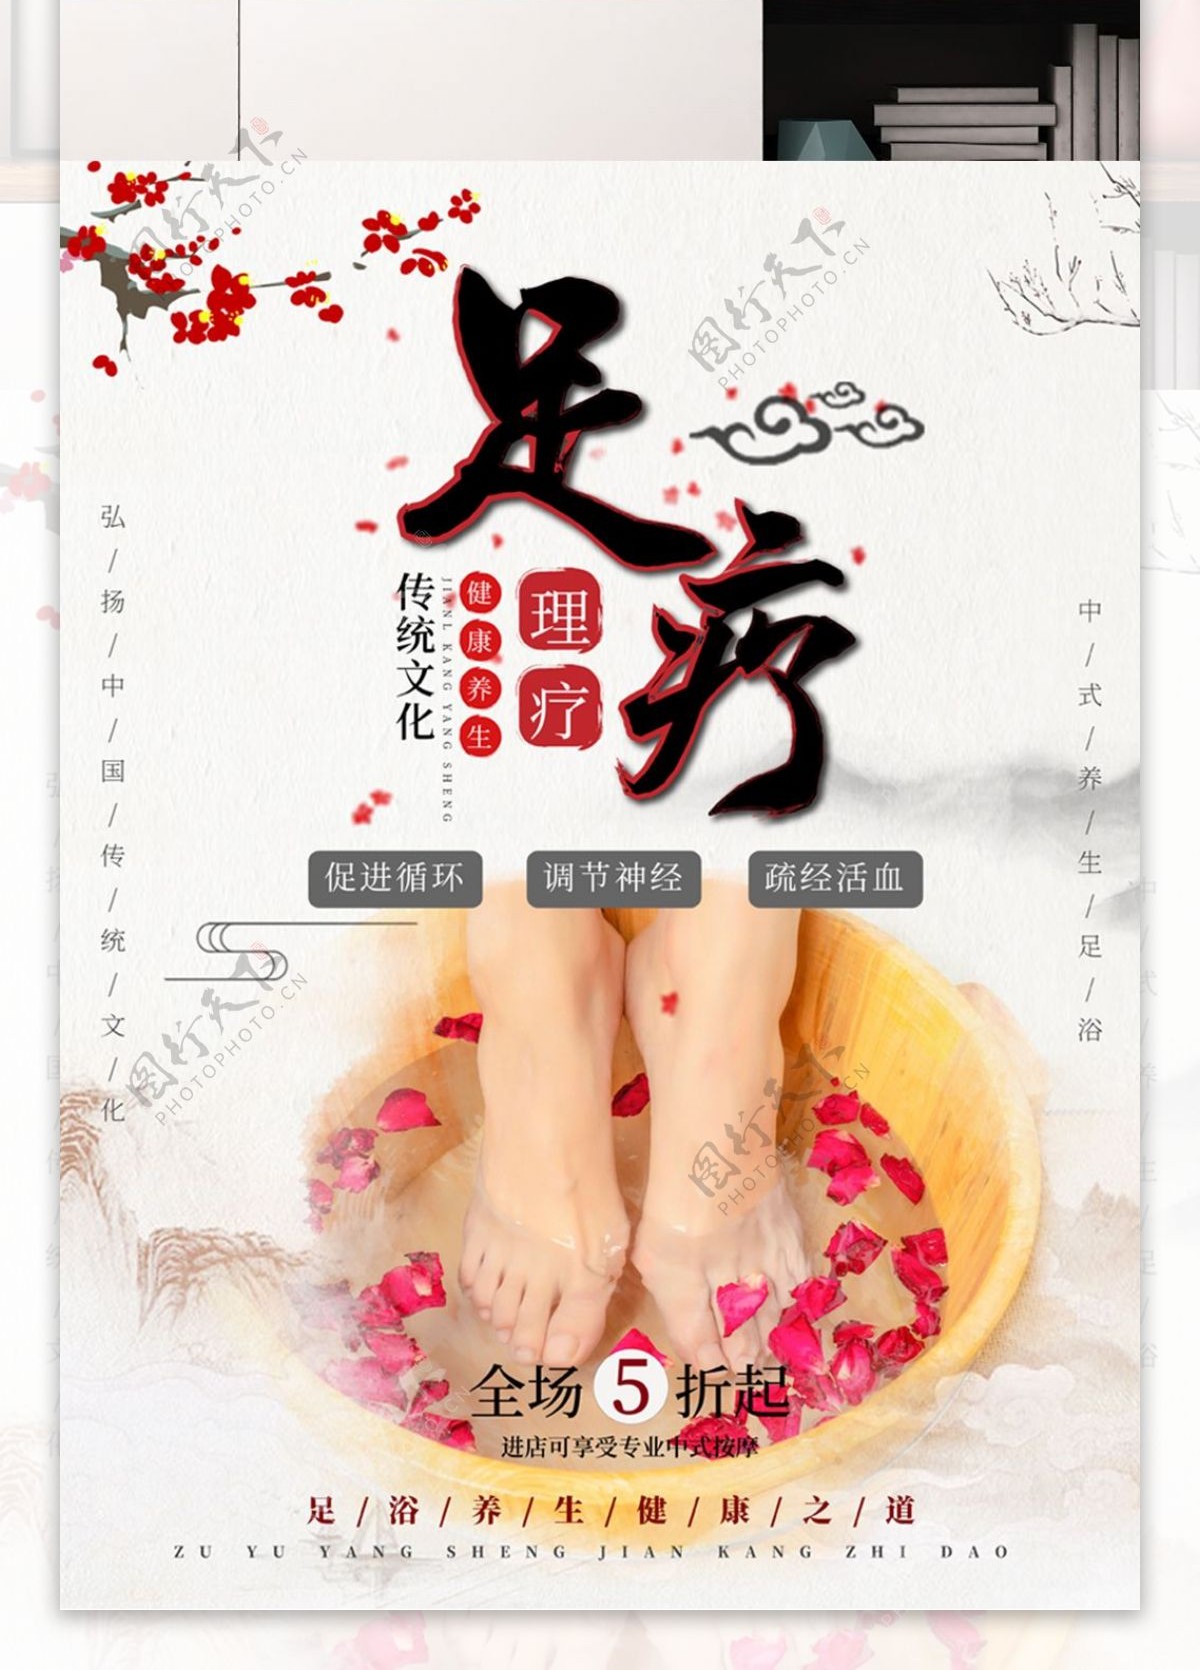 简约中国风中足浴足疗保健养生海报